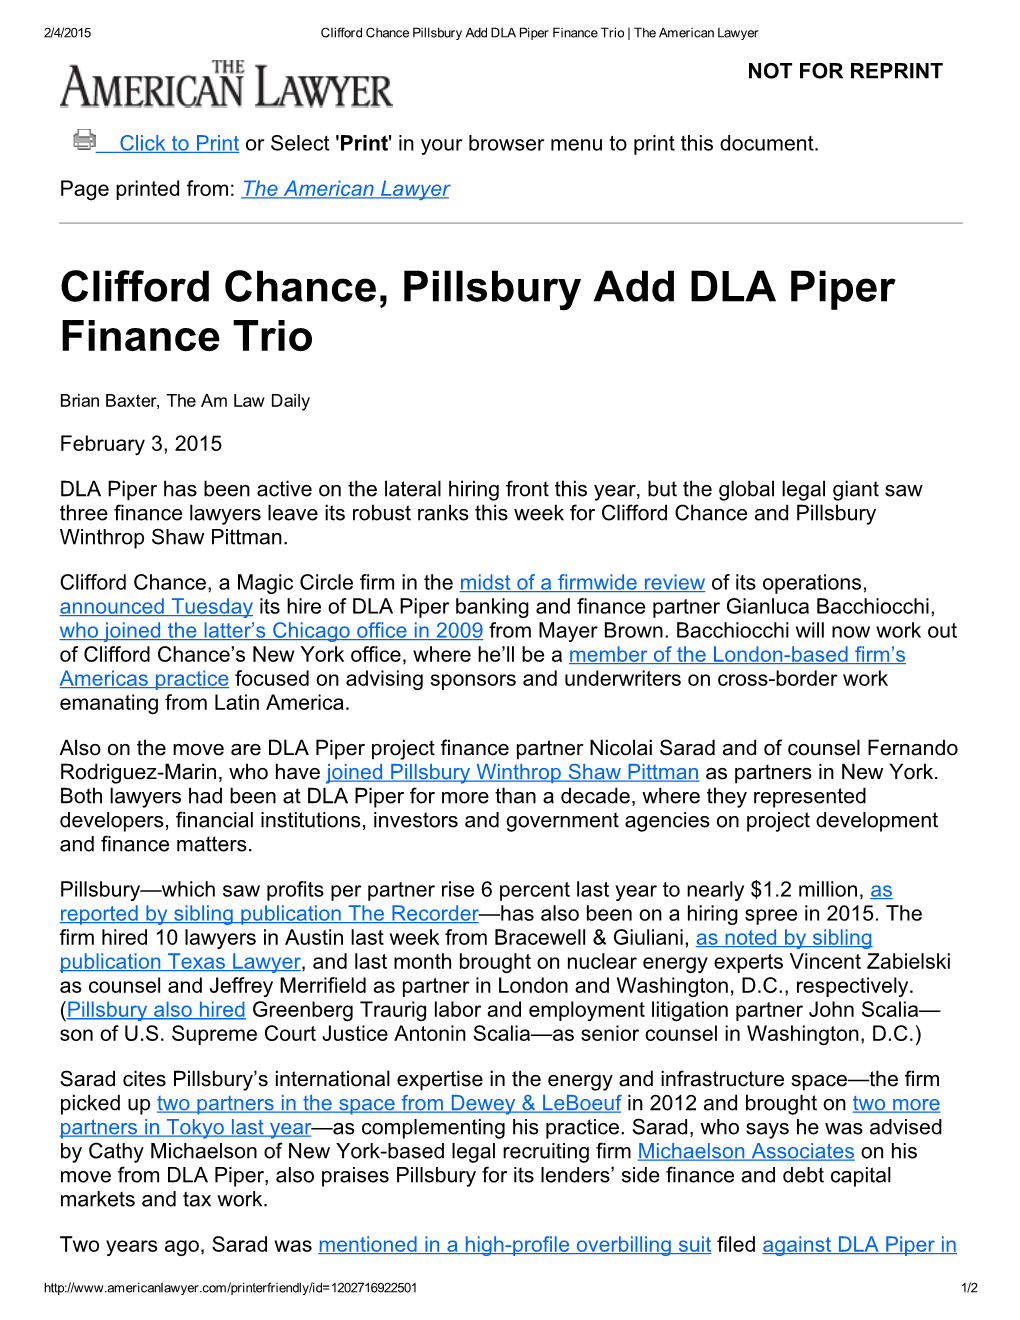 Clifford Chance, Pillsbury Add DLA Piper Finance Trio